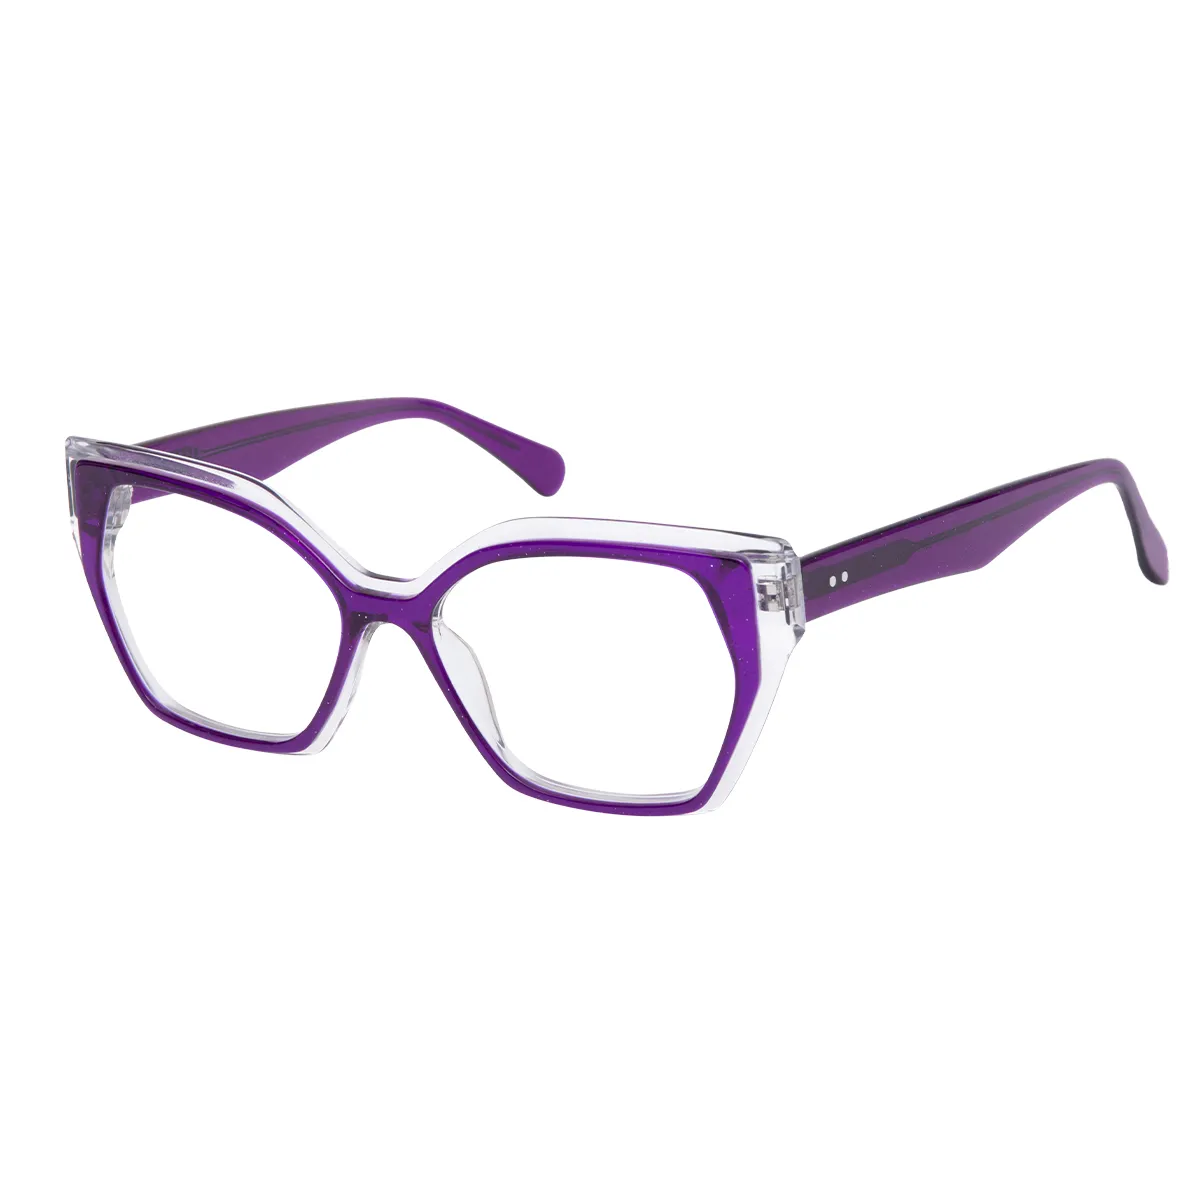 Tegan - Geometric Purple-Transparent Glasses for Women